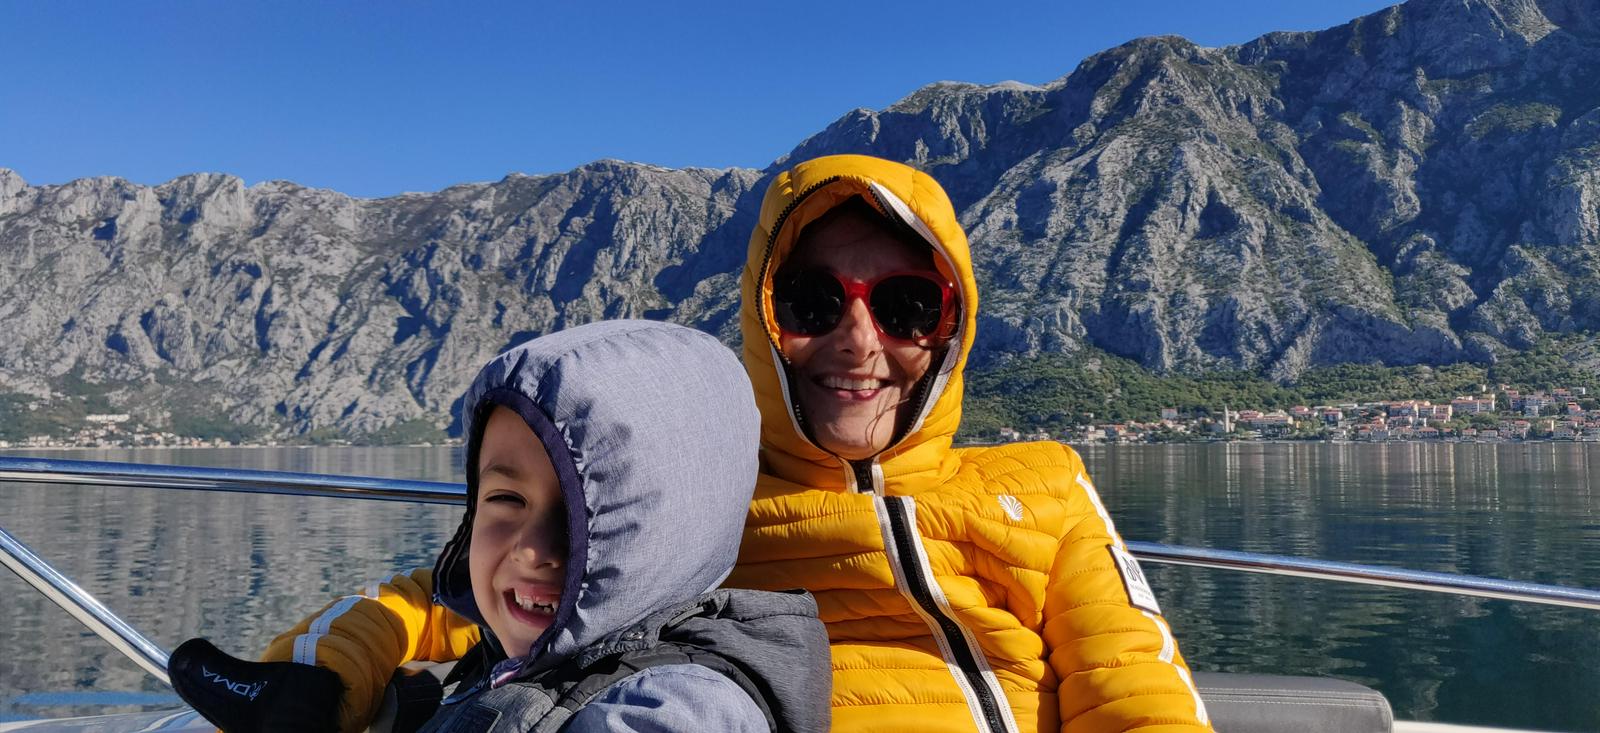 Na fotografiji sta Nina Wabra Jakič in Leo. Sta na čolnu sredi jezera, ki ga obdajajo gore. Oba nosita zimski jakni in sta si nadela kapuci, Nina nosi velika sončna očala z rdečim okvirjem. Oba sta nasmejana. Foto: Osebni arhiv Nine Wabra Jakič